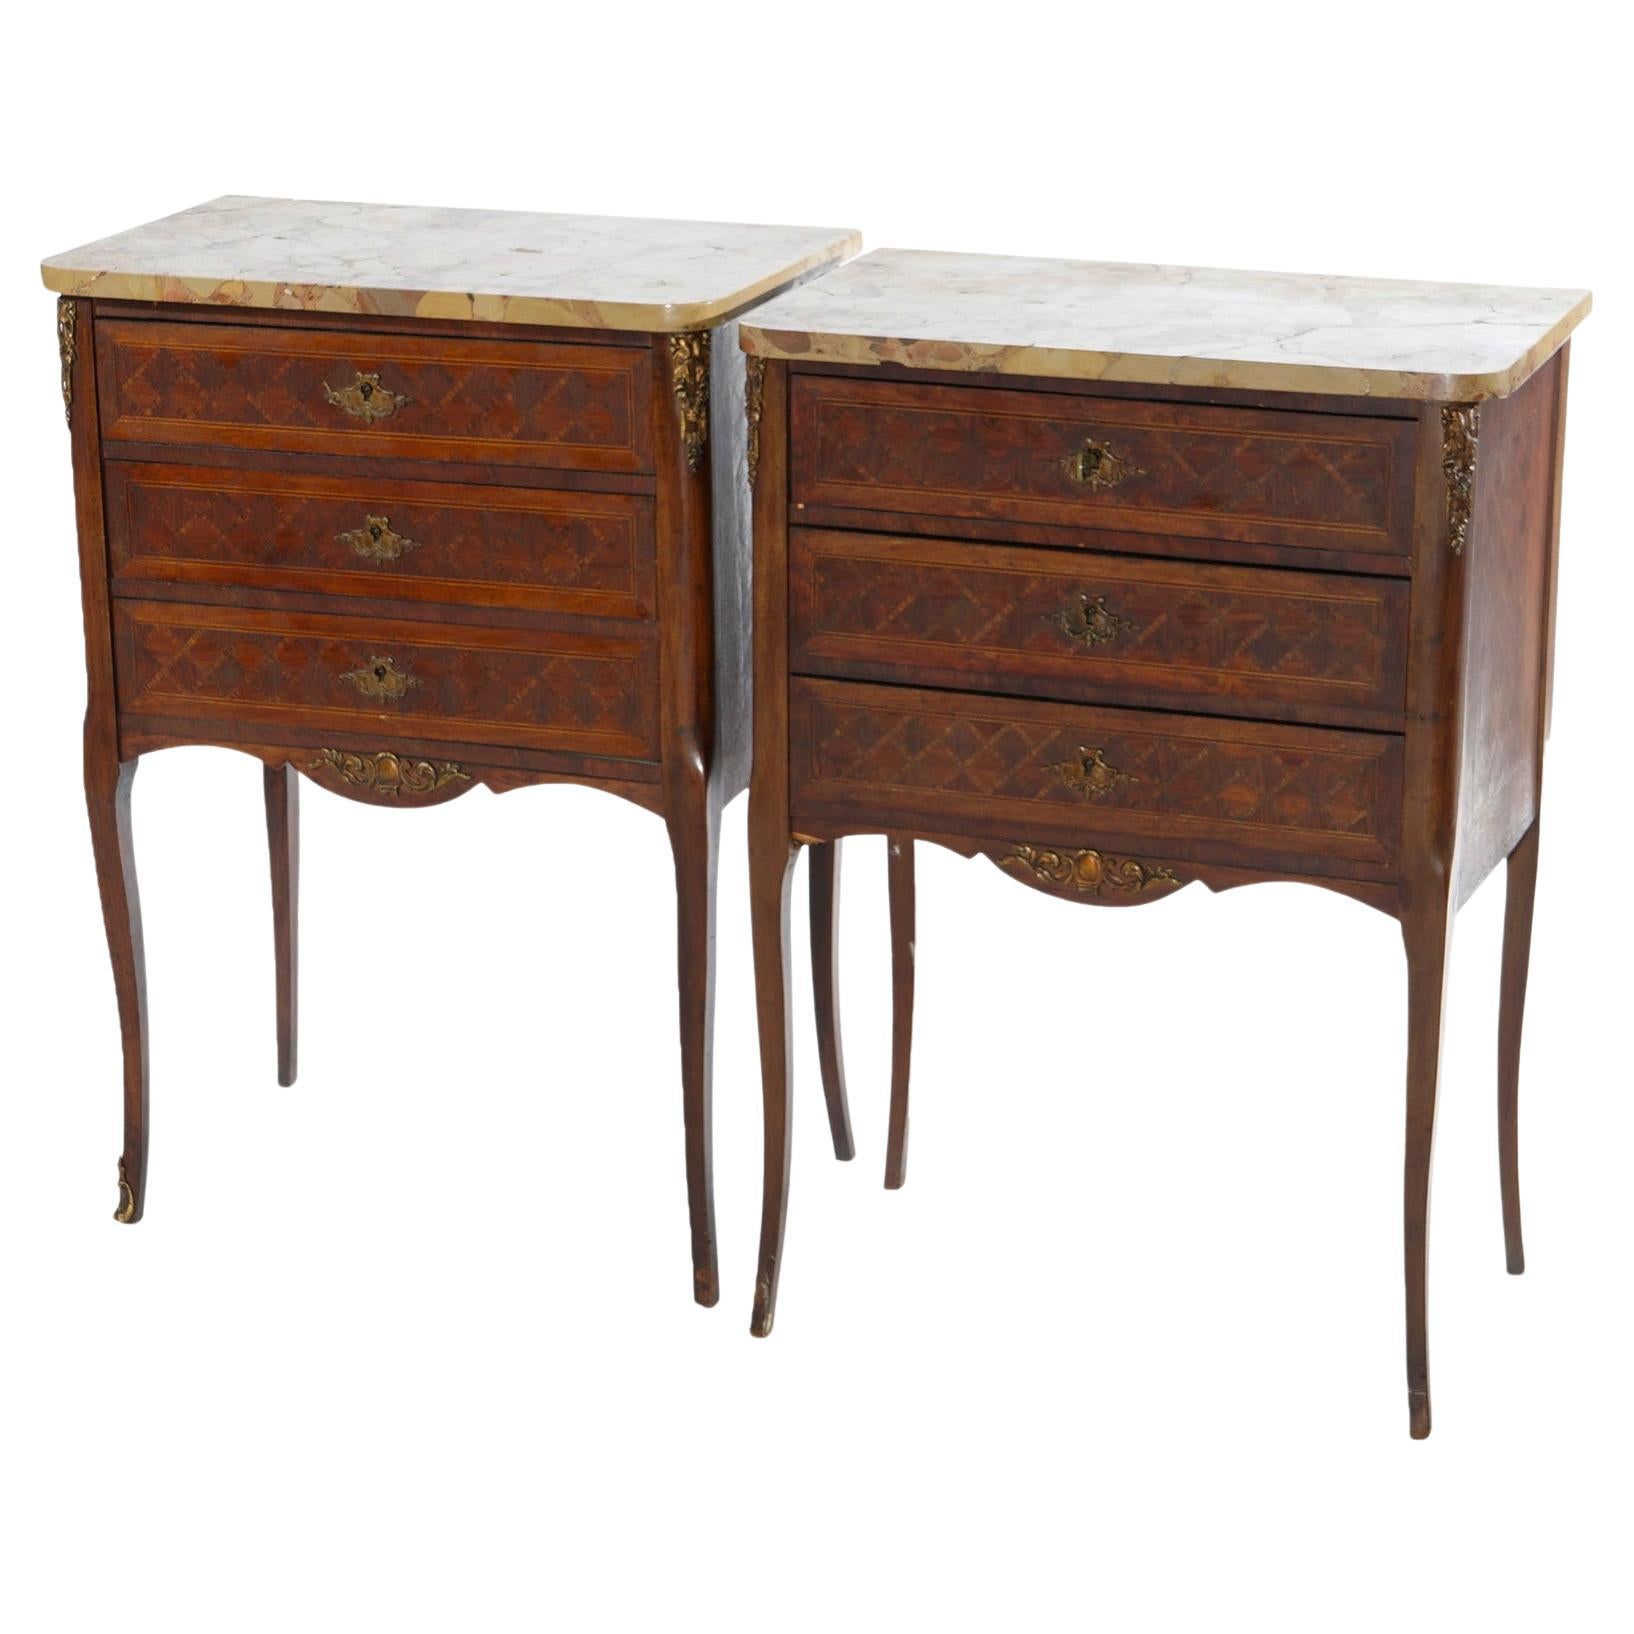 Ancienne paire de tables d'appoint françaises en bois de violette et citronnier incrusté de marbre, vers 1910